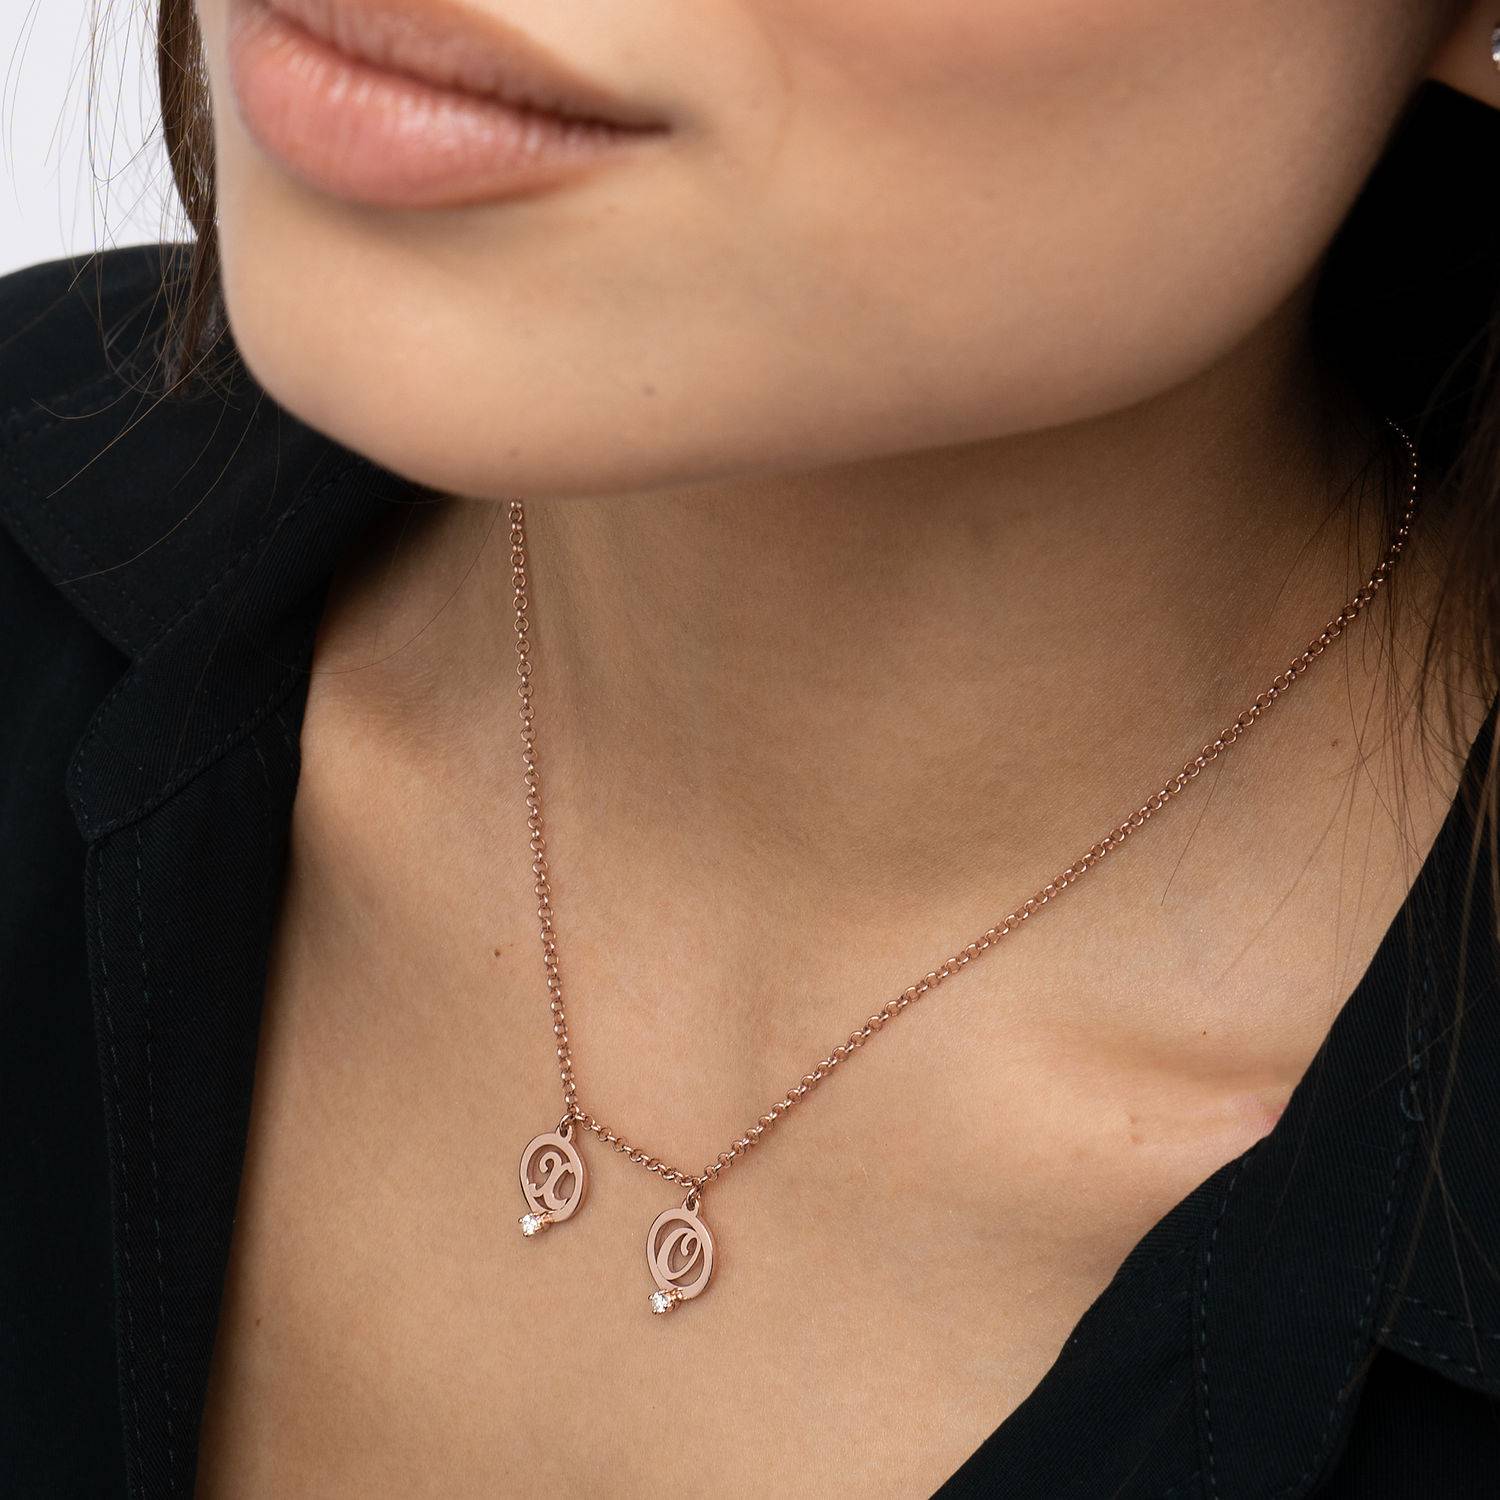 Halo Initialen Halskette mit Zirkonia - 750er rosé vergoldetes Silber-2 Produktfoto